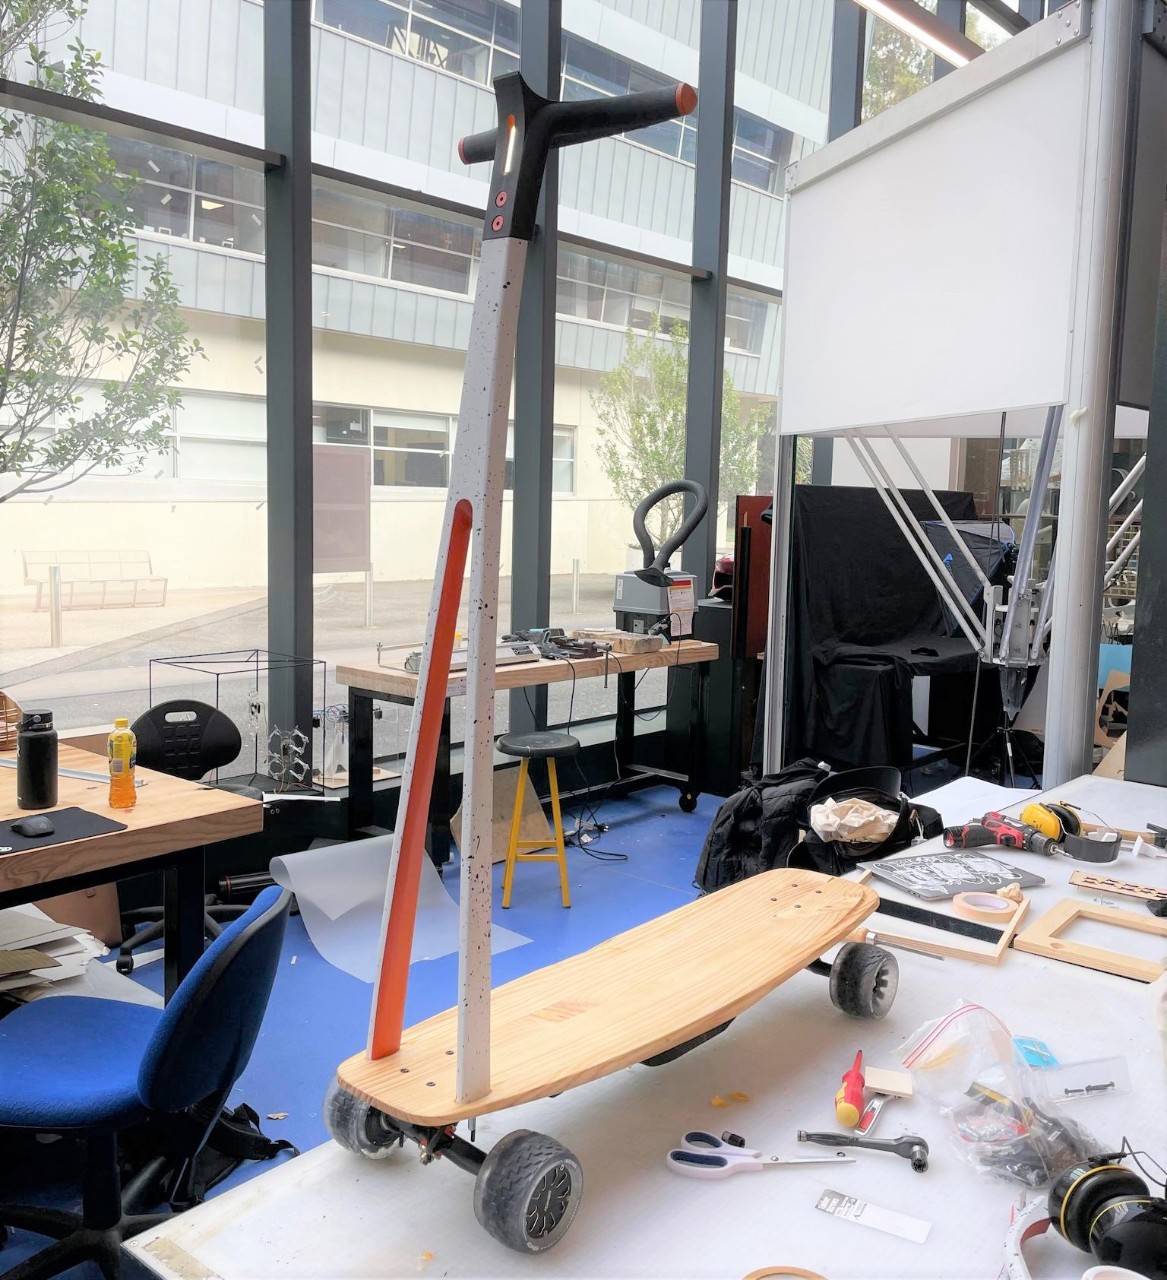 ark-e微流动的原型设计protolab坐在书桌上工作,它看起来类似于摩托车但基础和车轮好像巡洋舰滑板